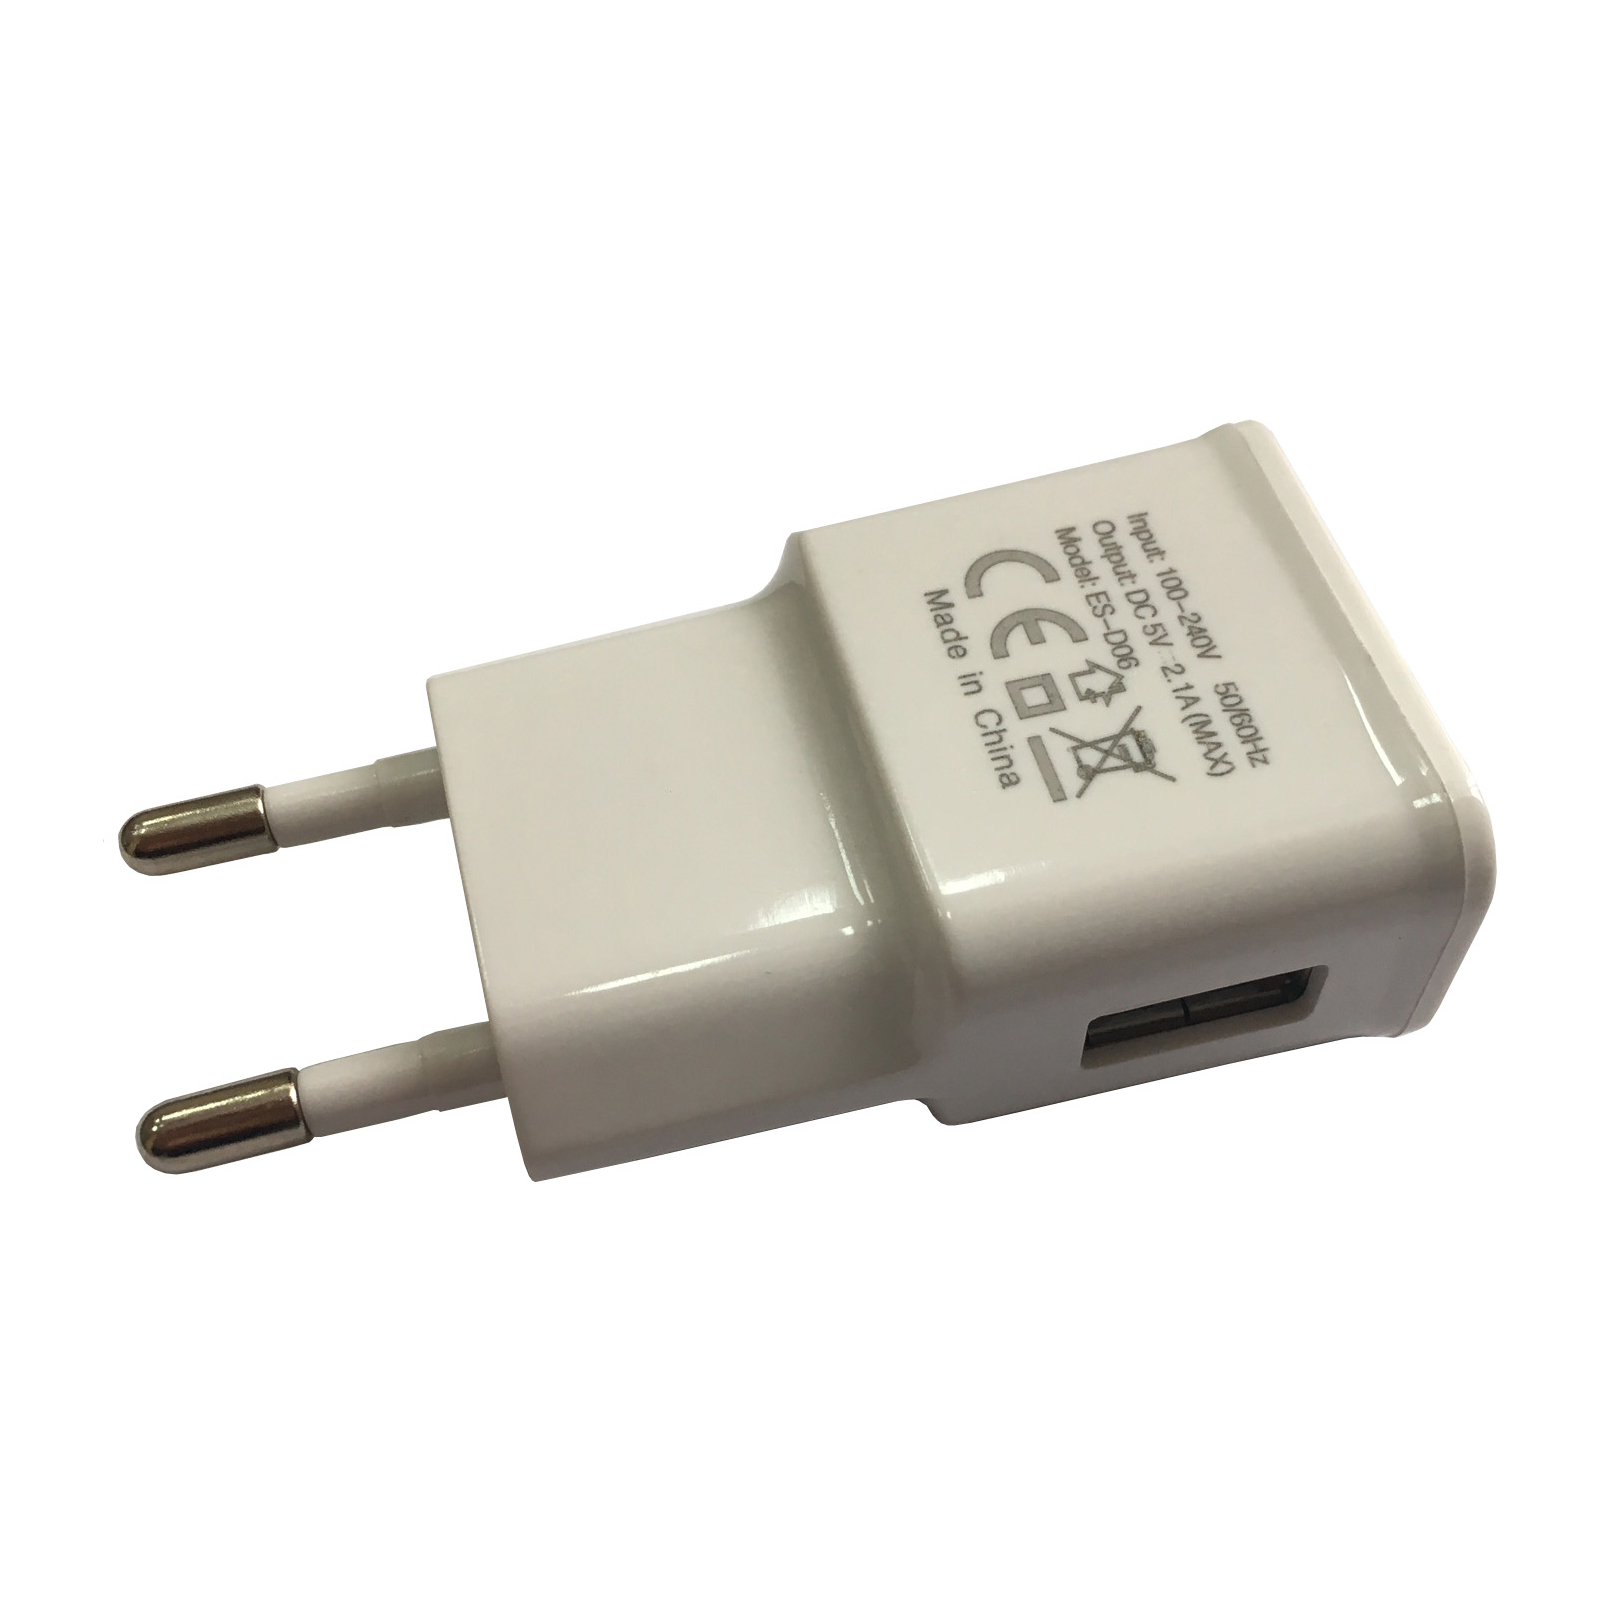 Зарядний пристрій Atcom ES-D06 (1*USB, 2.1A) (14903)